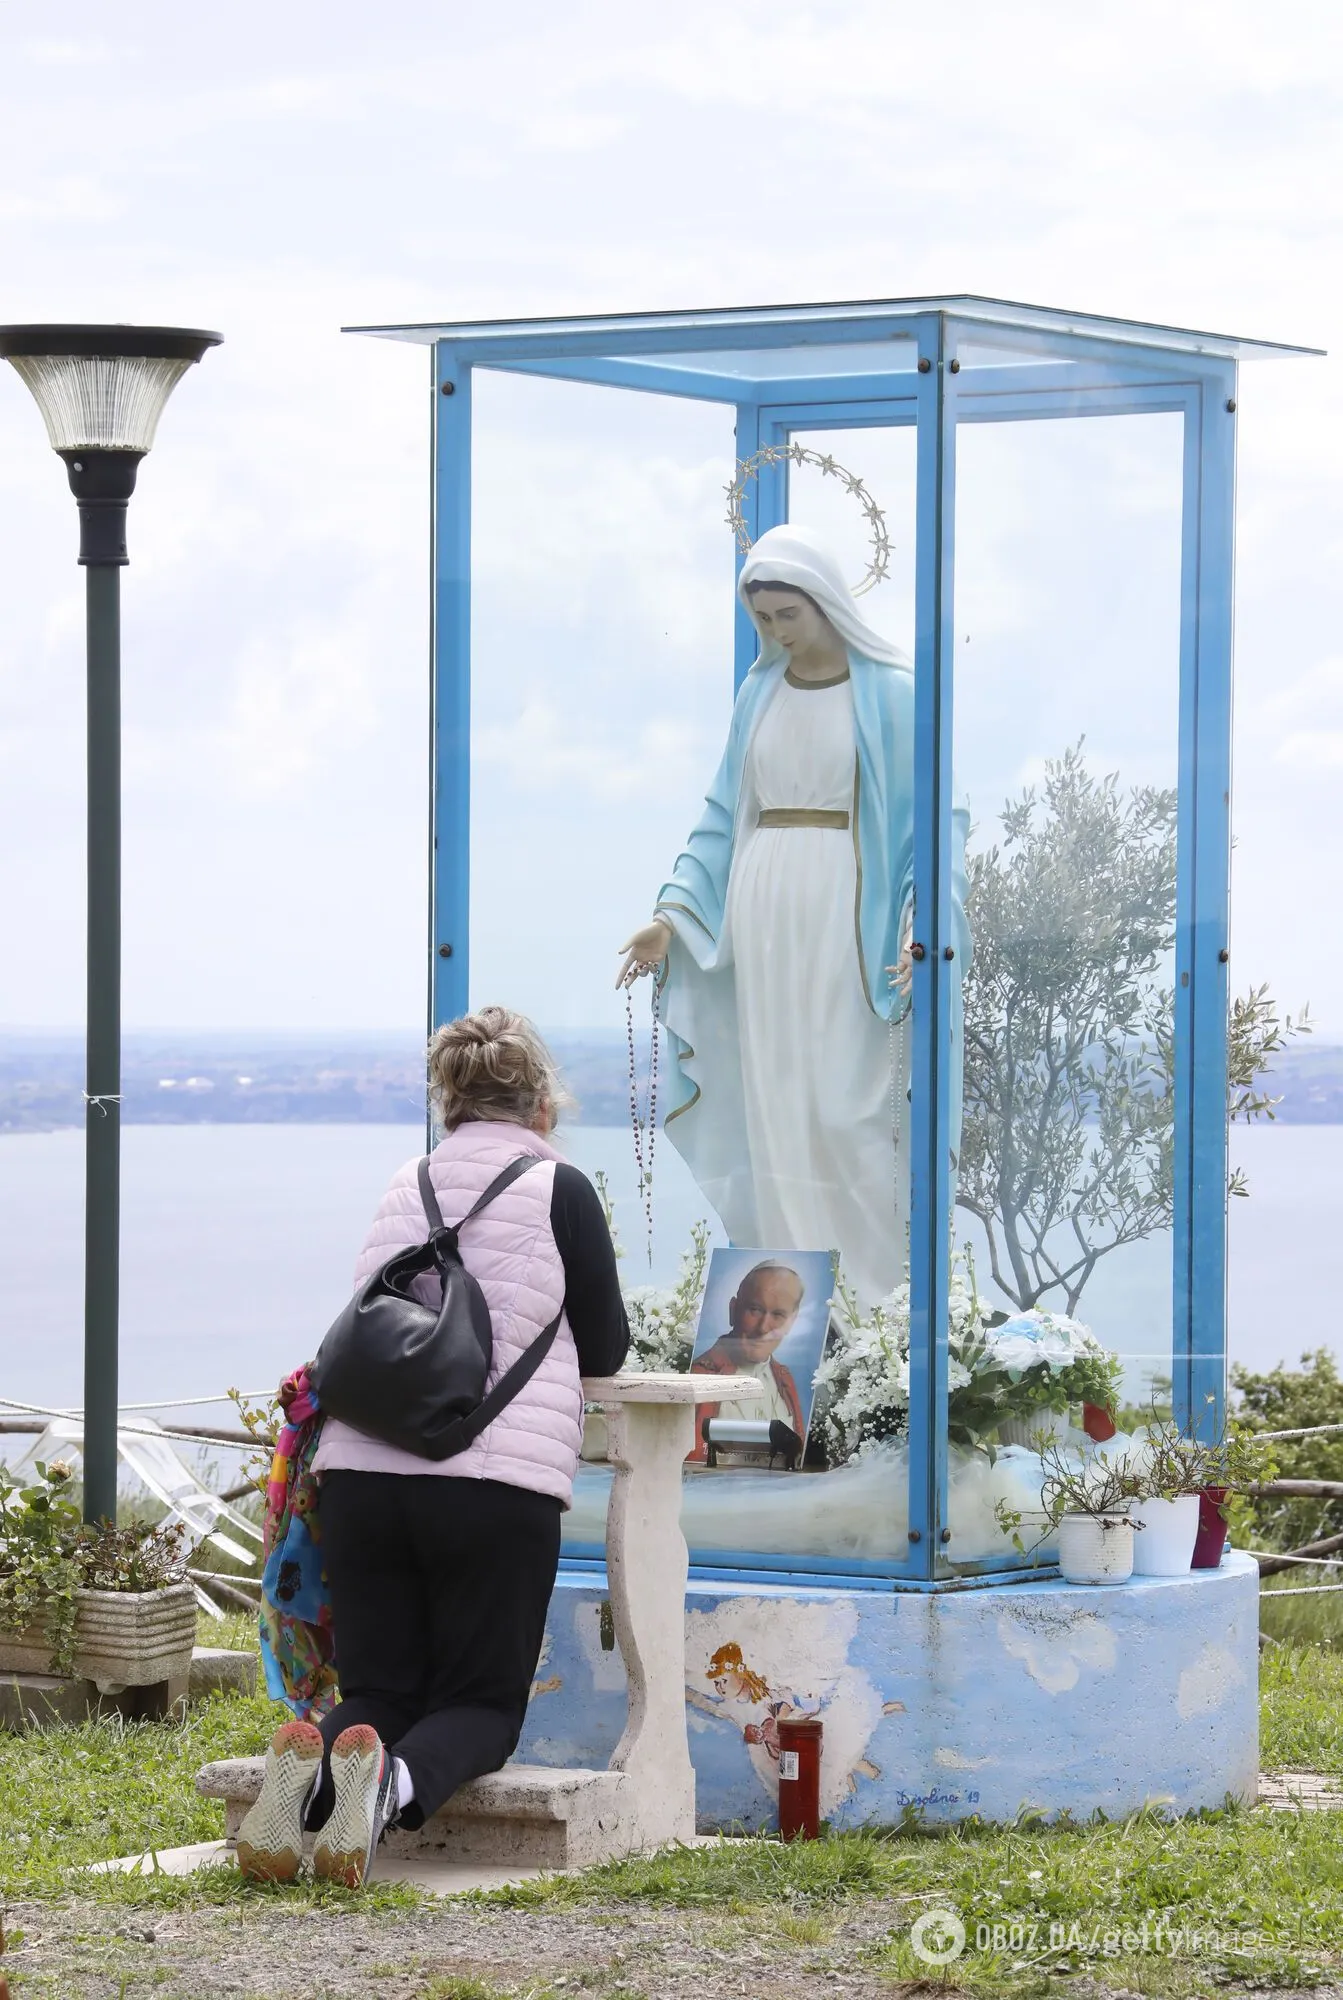 Ватикан признал фальшивкой известную статую Девы Марии, которая "плачет кровью". Фото